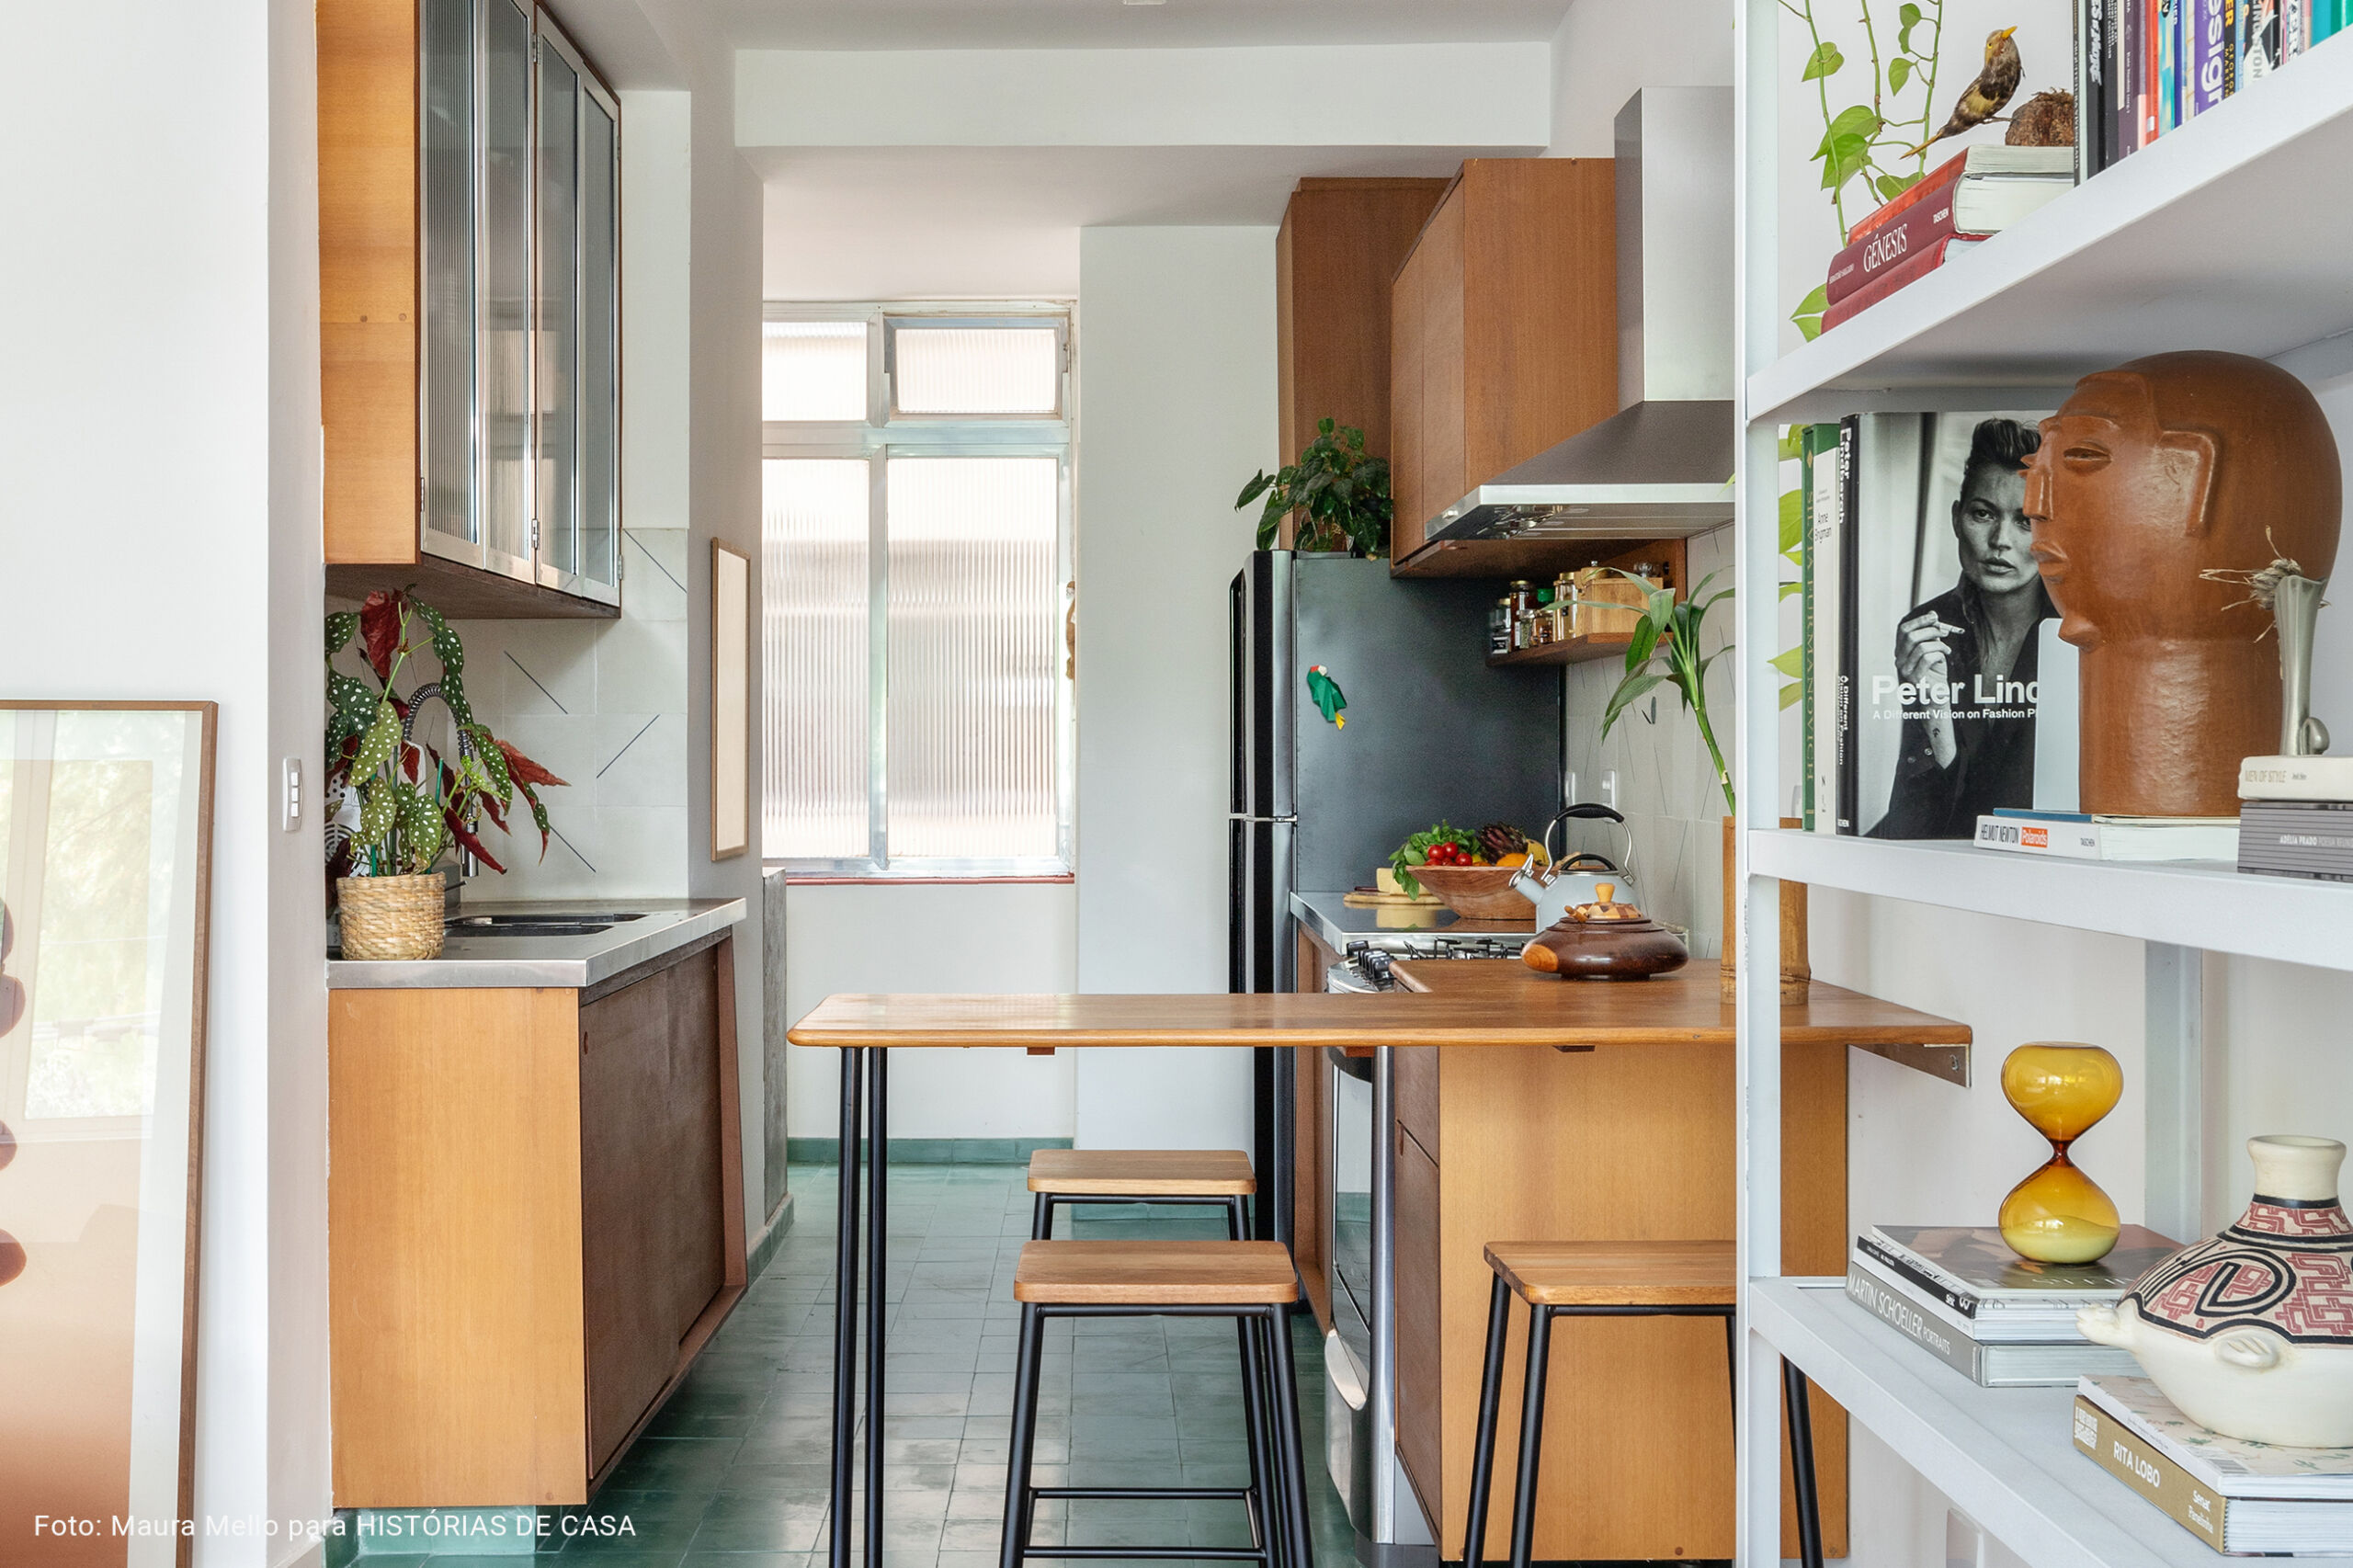 Cozinha integrada com piso verde e geladeira preta